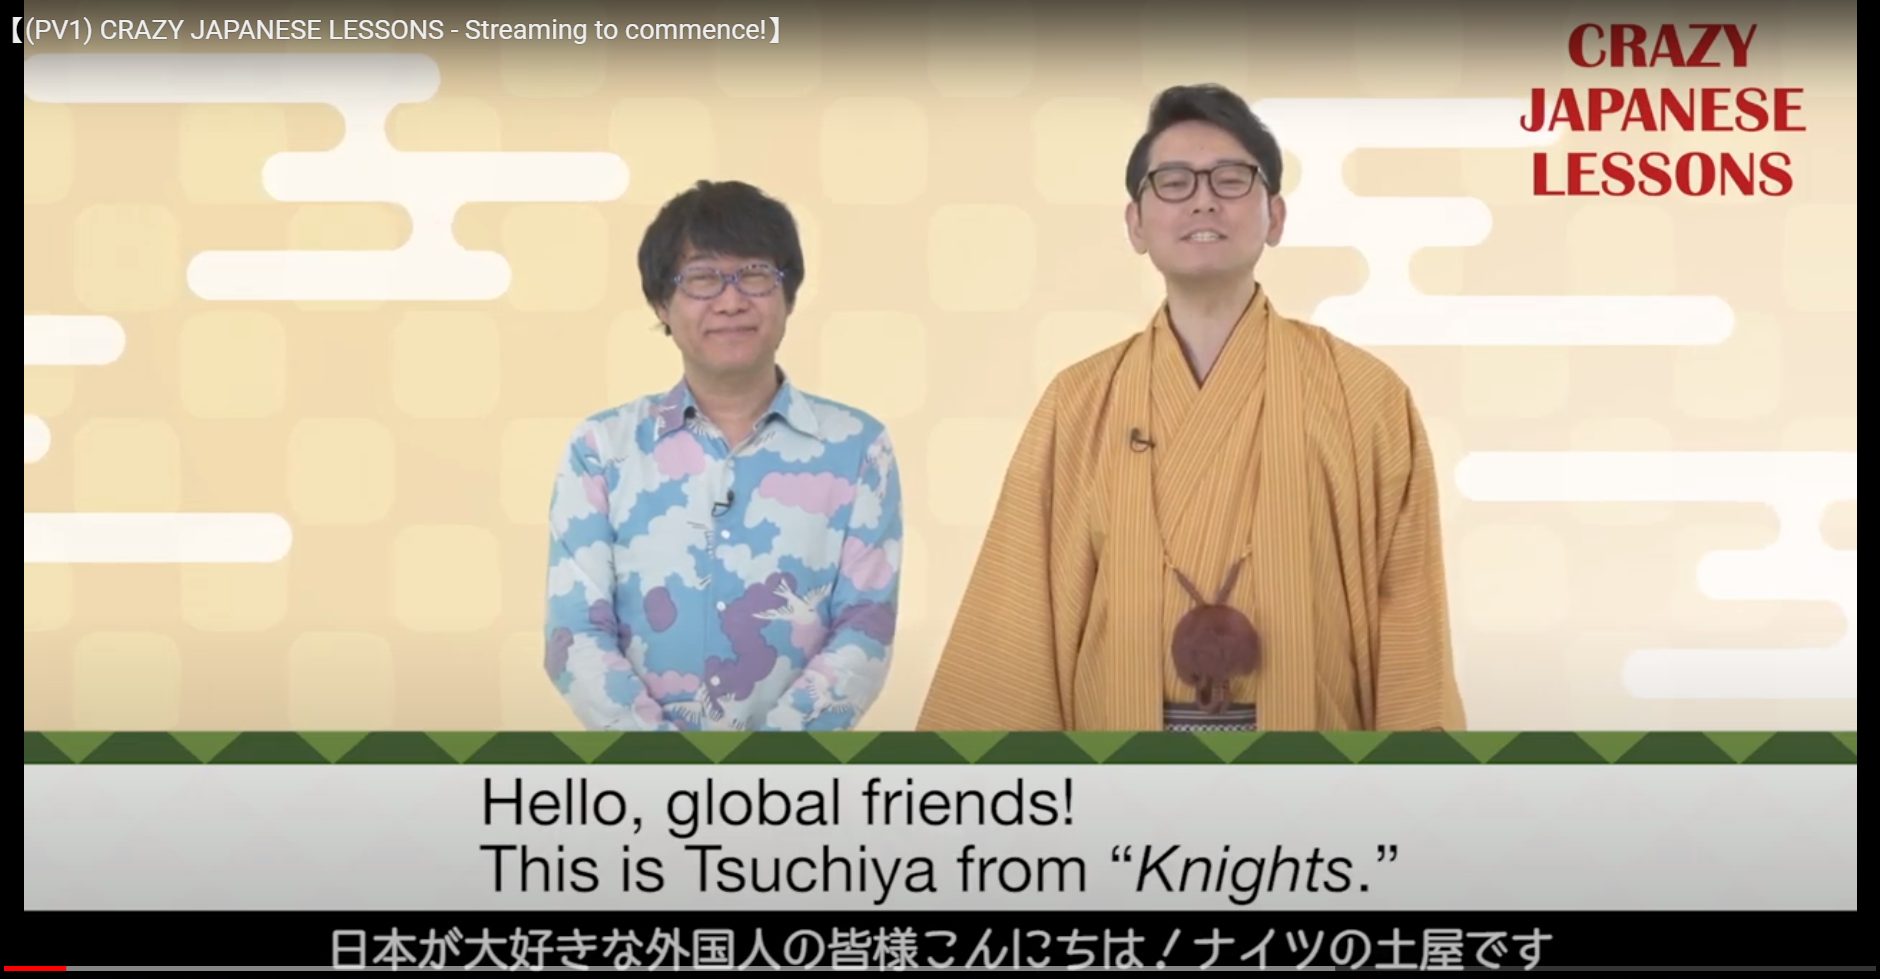 Fuji Television lança um curso de língua japonesa no YouTube para espectadores globais